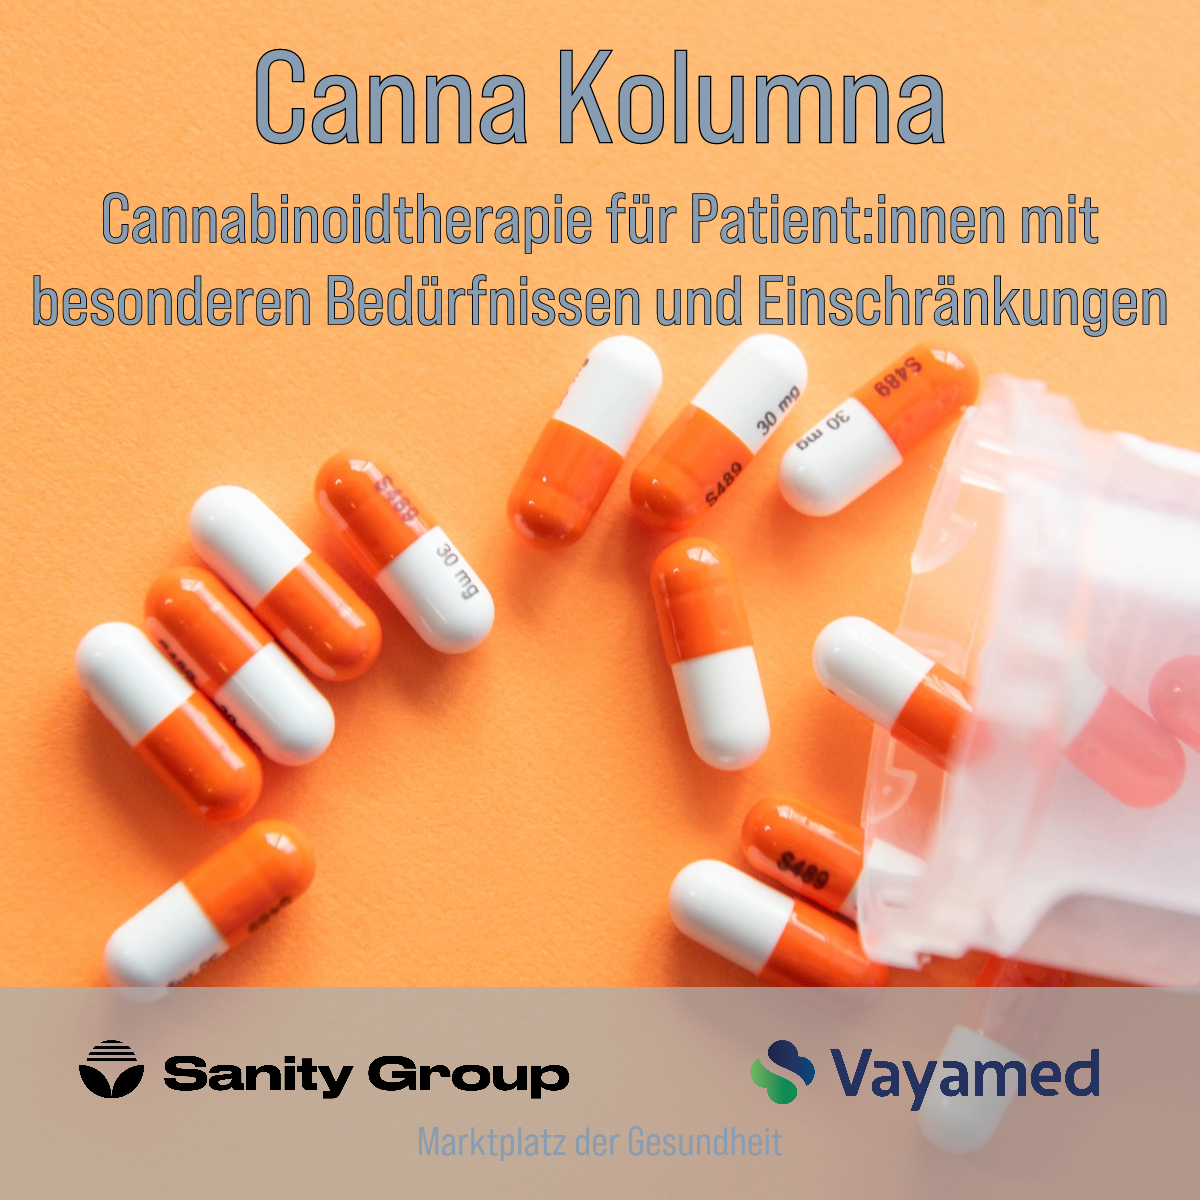 Cannabinoidtherapie für Patient:innen mit besonderen Bedürfnissen und Einschränkungen